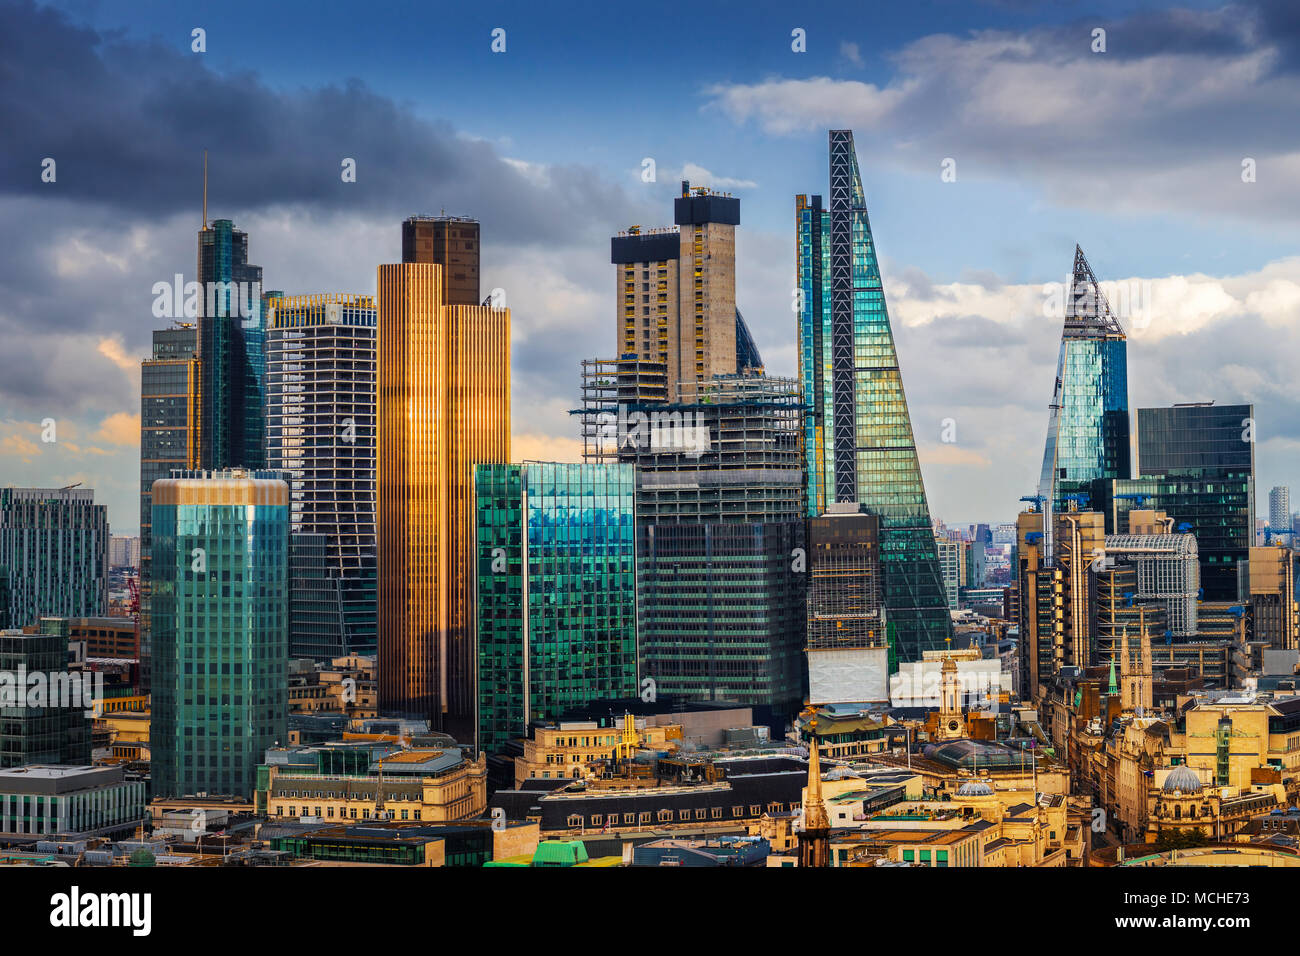 Londra, Inghilterra - panoramica vista sullo skyline di banca e Canary Wharf, Londra centrale del leader dei quartieri finanziari con famosi grattacieli e altri terreni Foto Stock